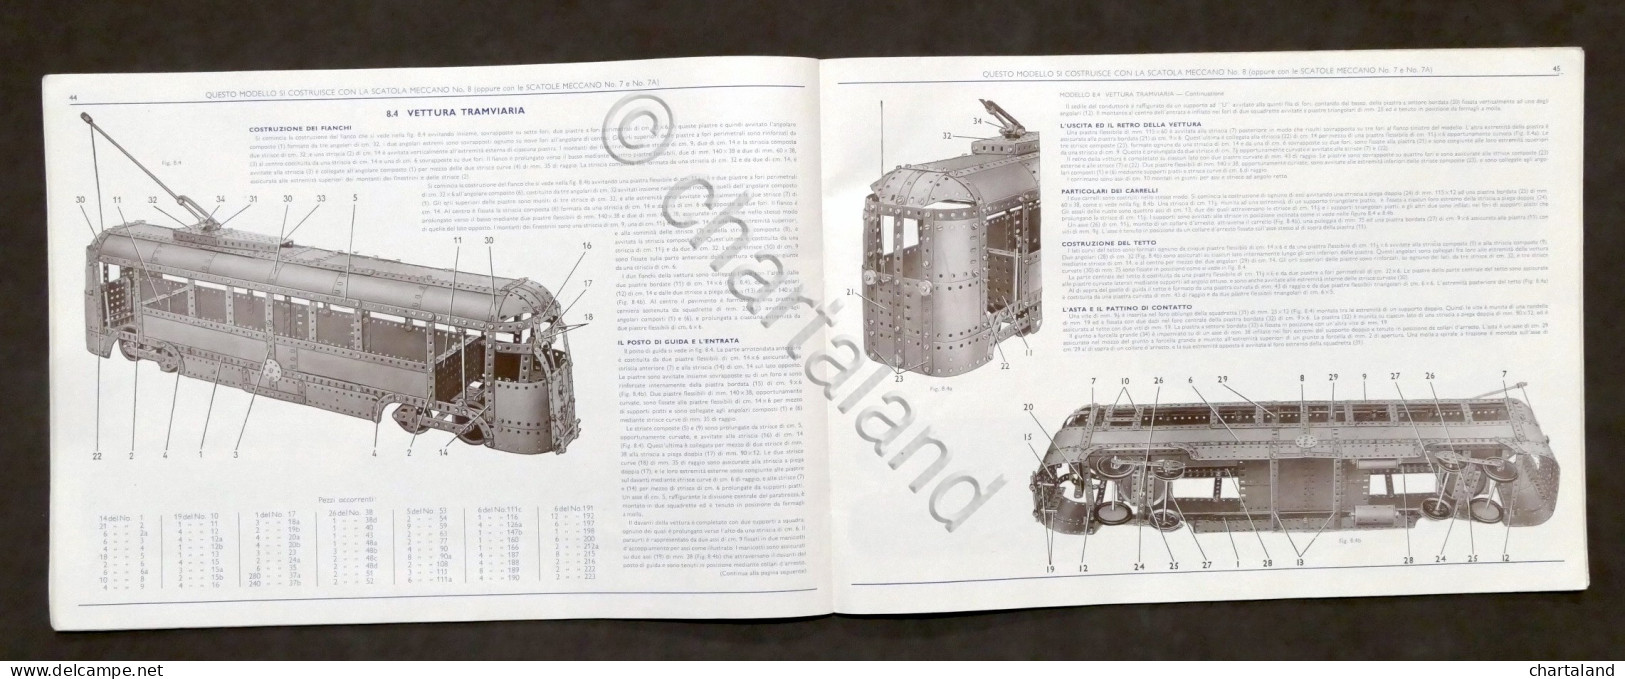 Giocattoli Costruzioni - Meccano - Istruzioni Per La Scatola N. 7 / 8 - 1955 - Meccano